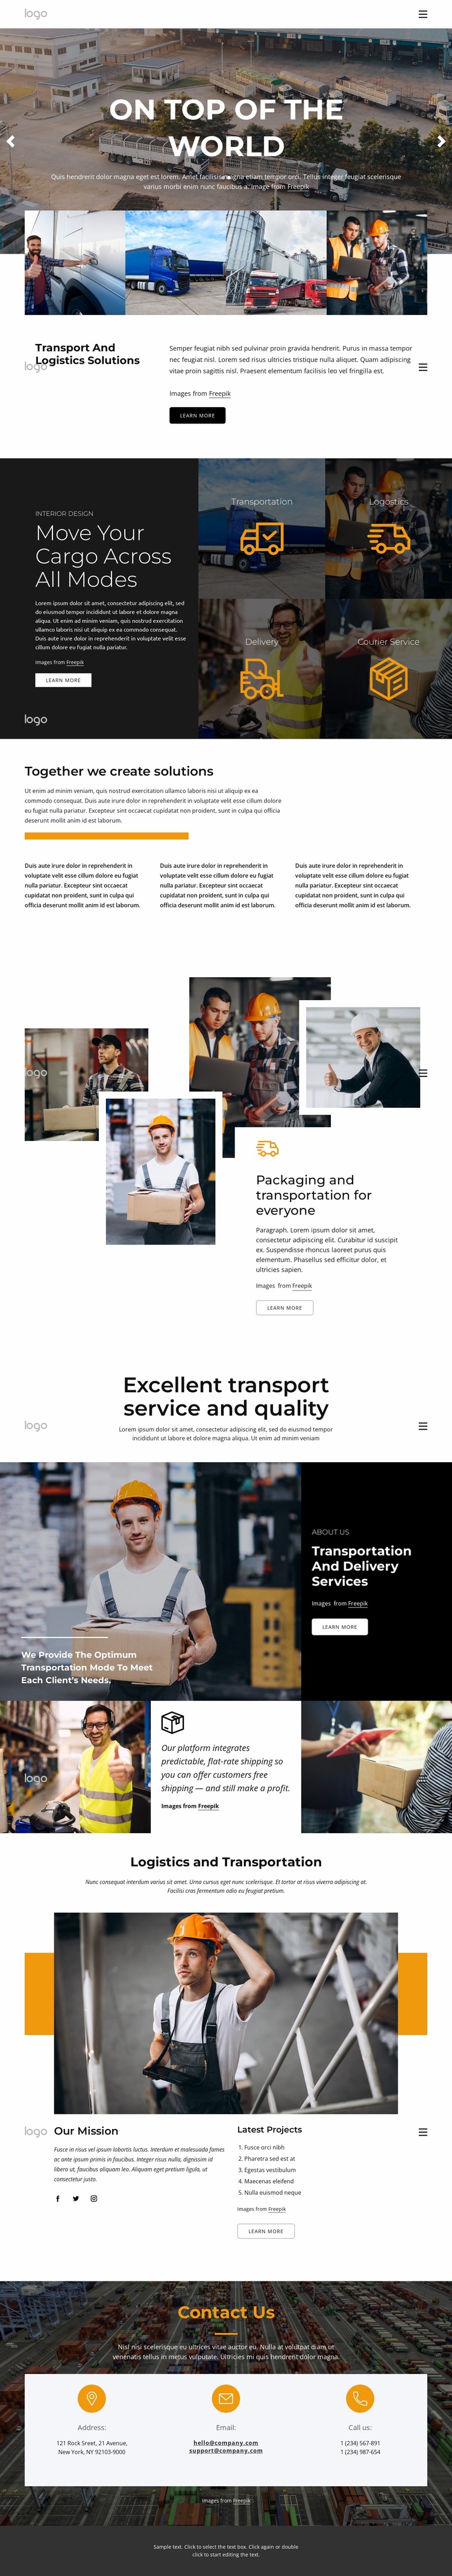 Transportation and logistics management Website Design